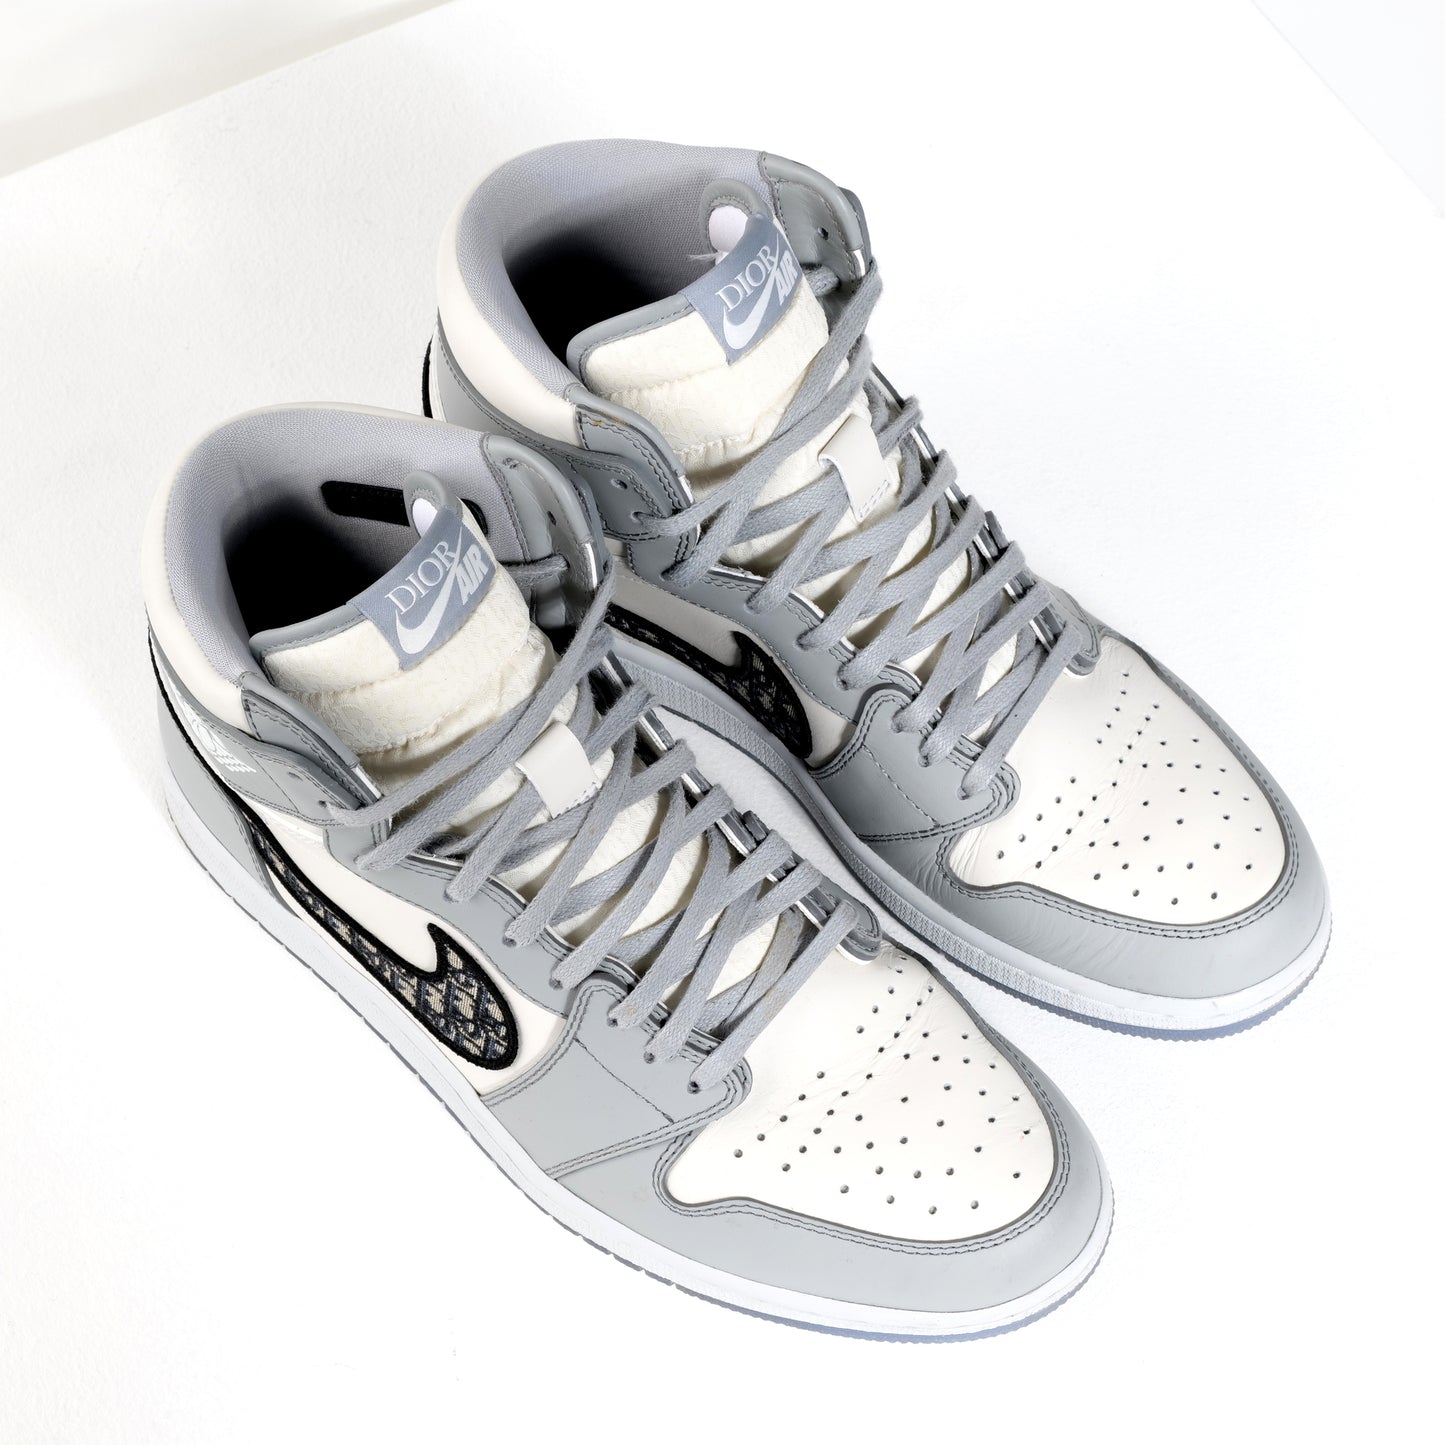 Dior Air Jordan High Sneakers